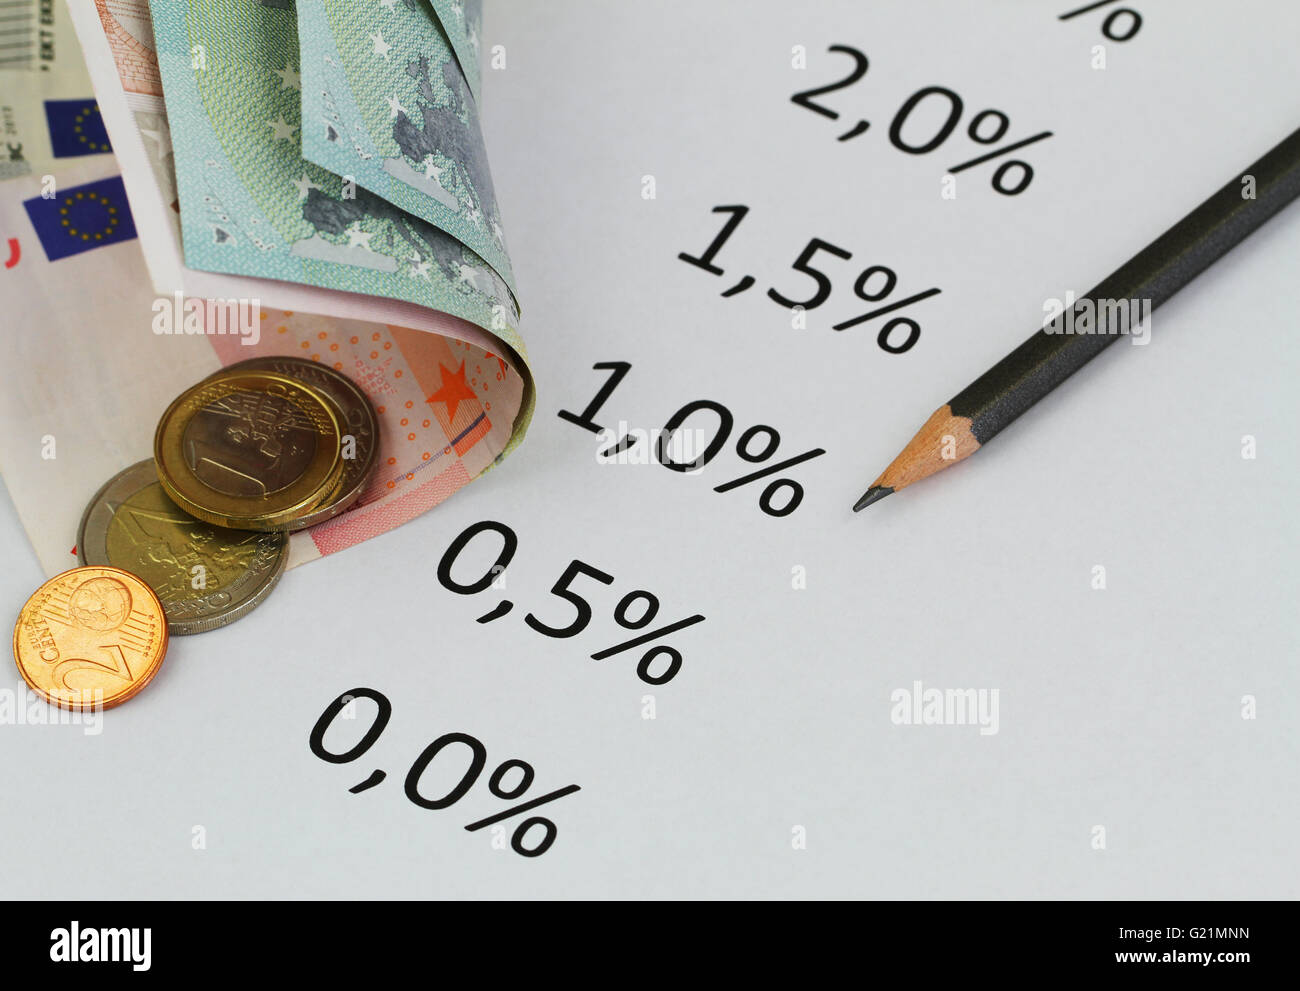 Auf Blatt Papier mit Euro-Banknoten und-Münzen aufgeführten Zinssätze Stockfoto